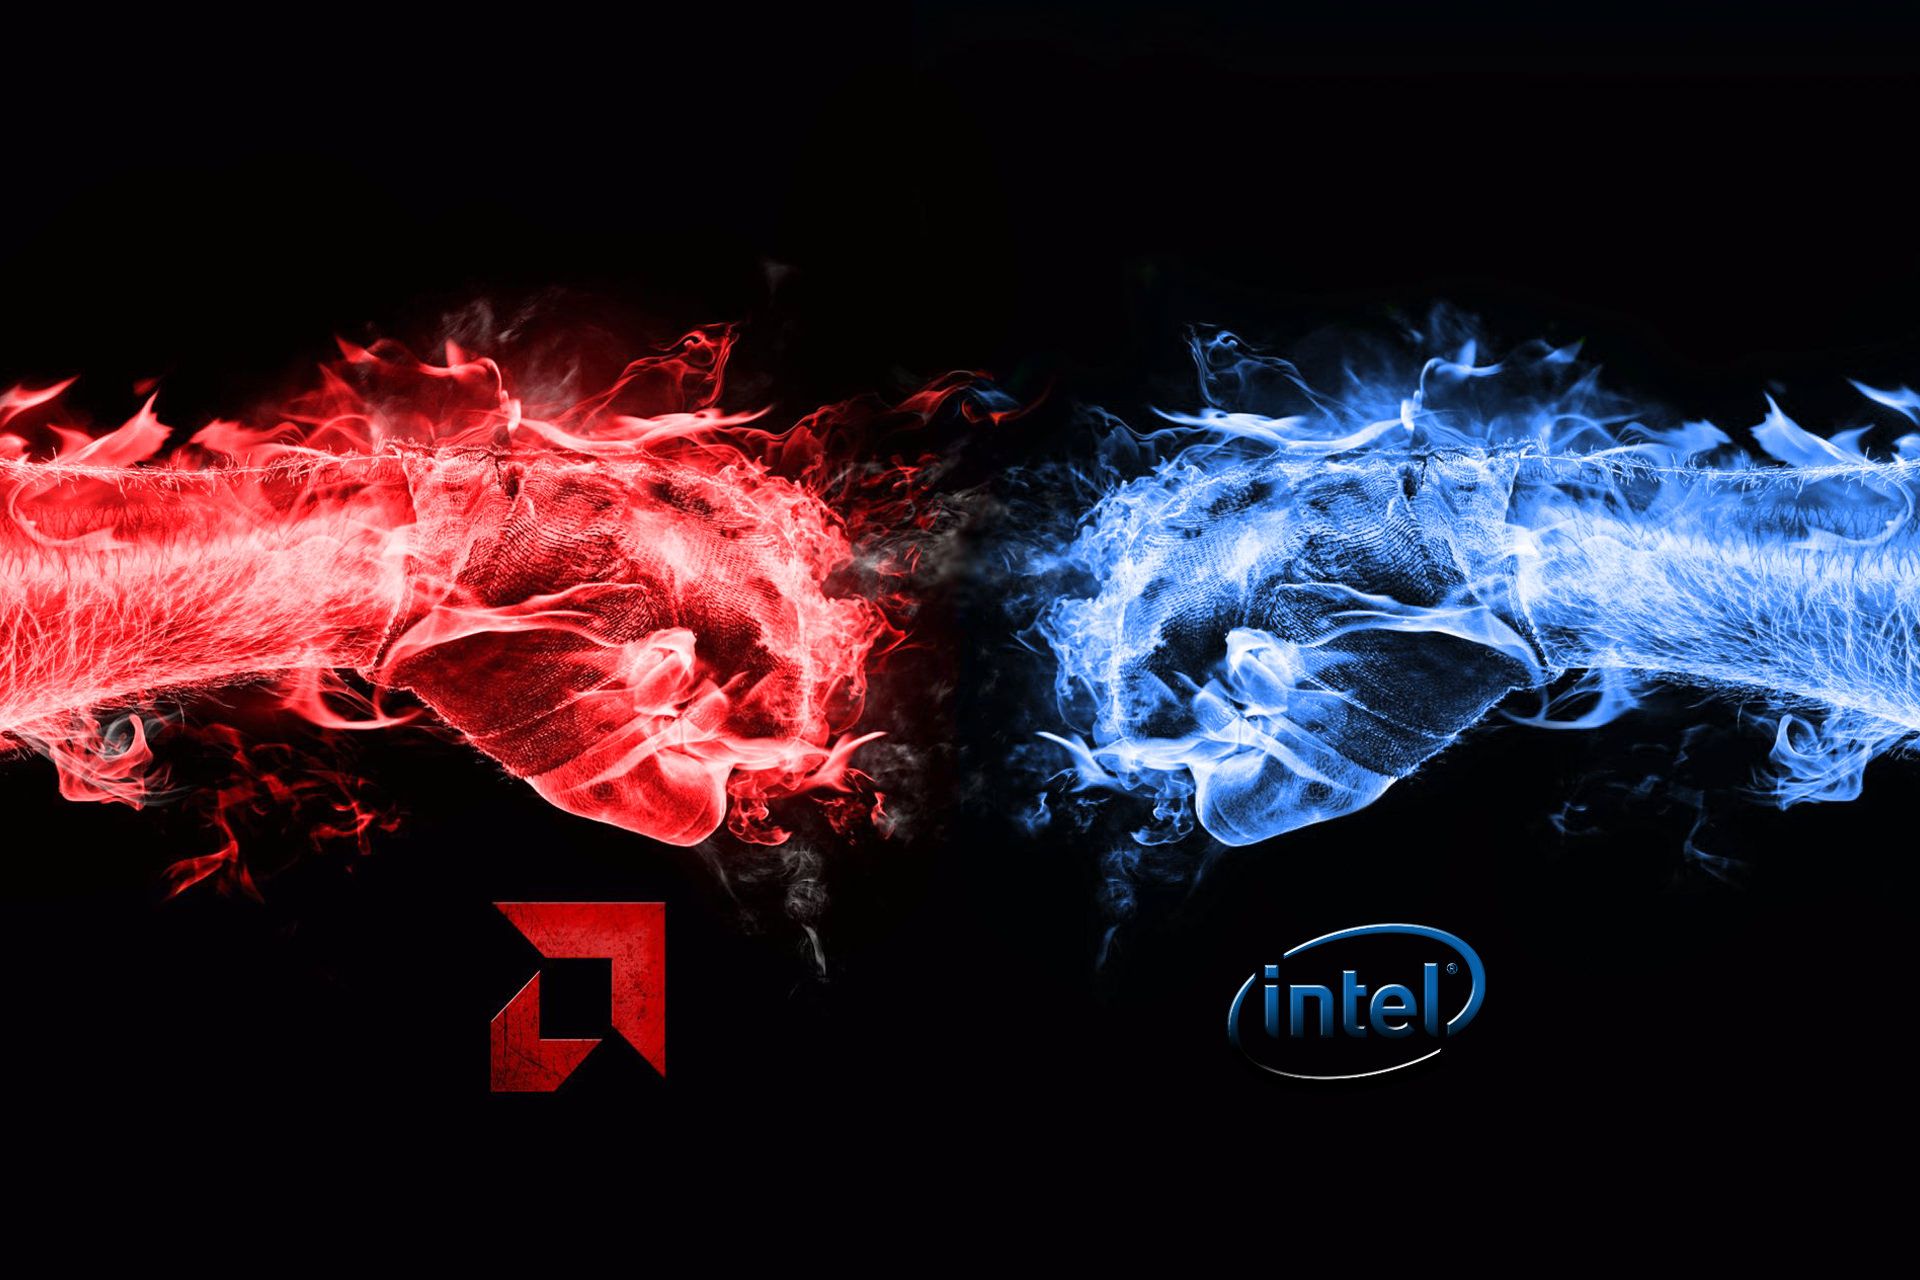 مشت اینتل / Intel و ای ام دی / AMD طرح گرافیکی رنگ قرمز و آبی پس زمینه مشکی